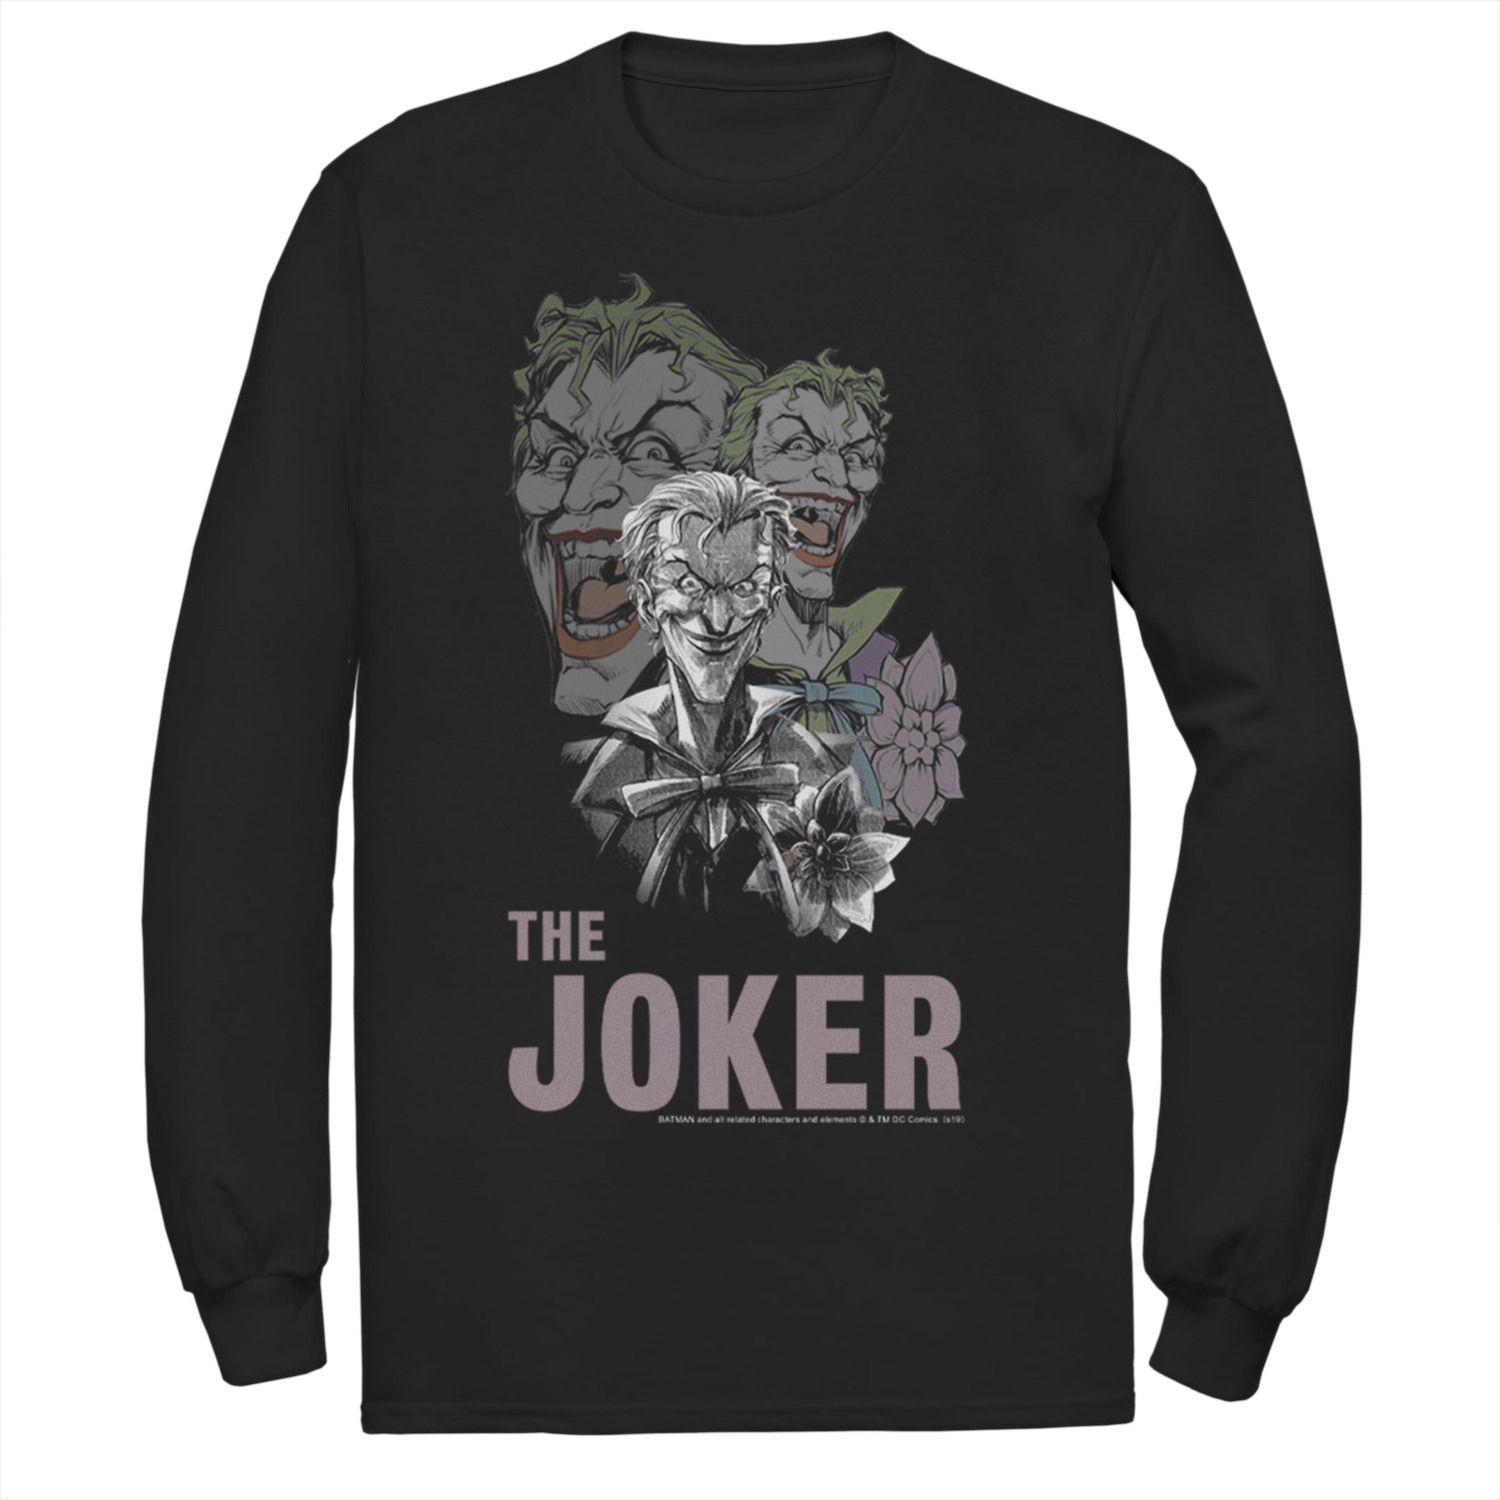 Мужская футболка с коллажем DC Comics The Joker фото